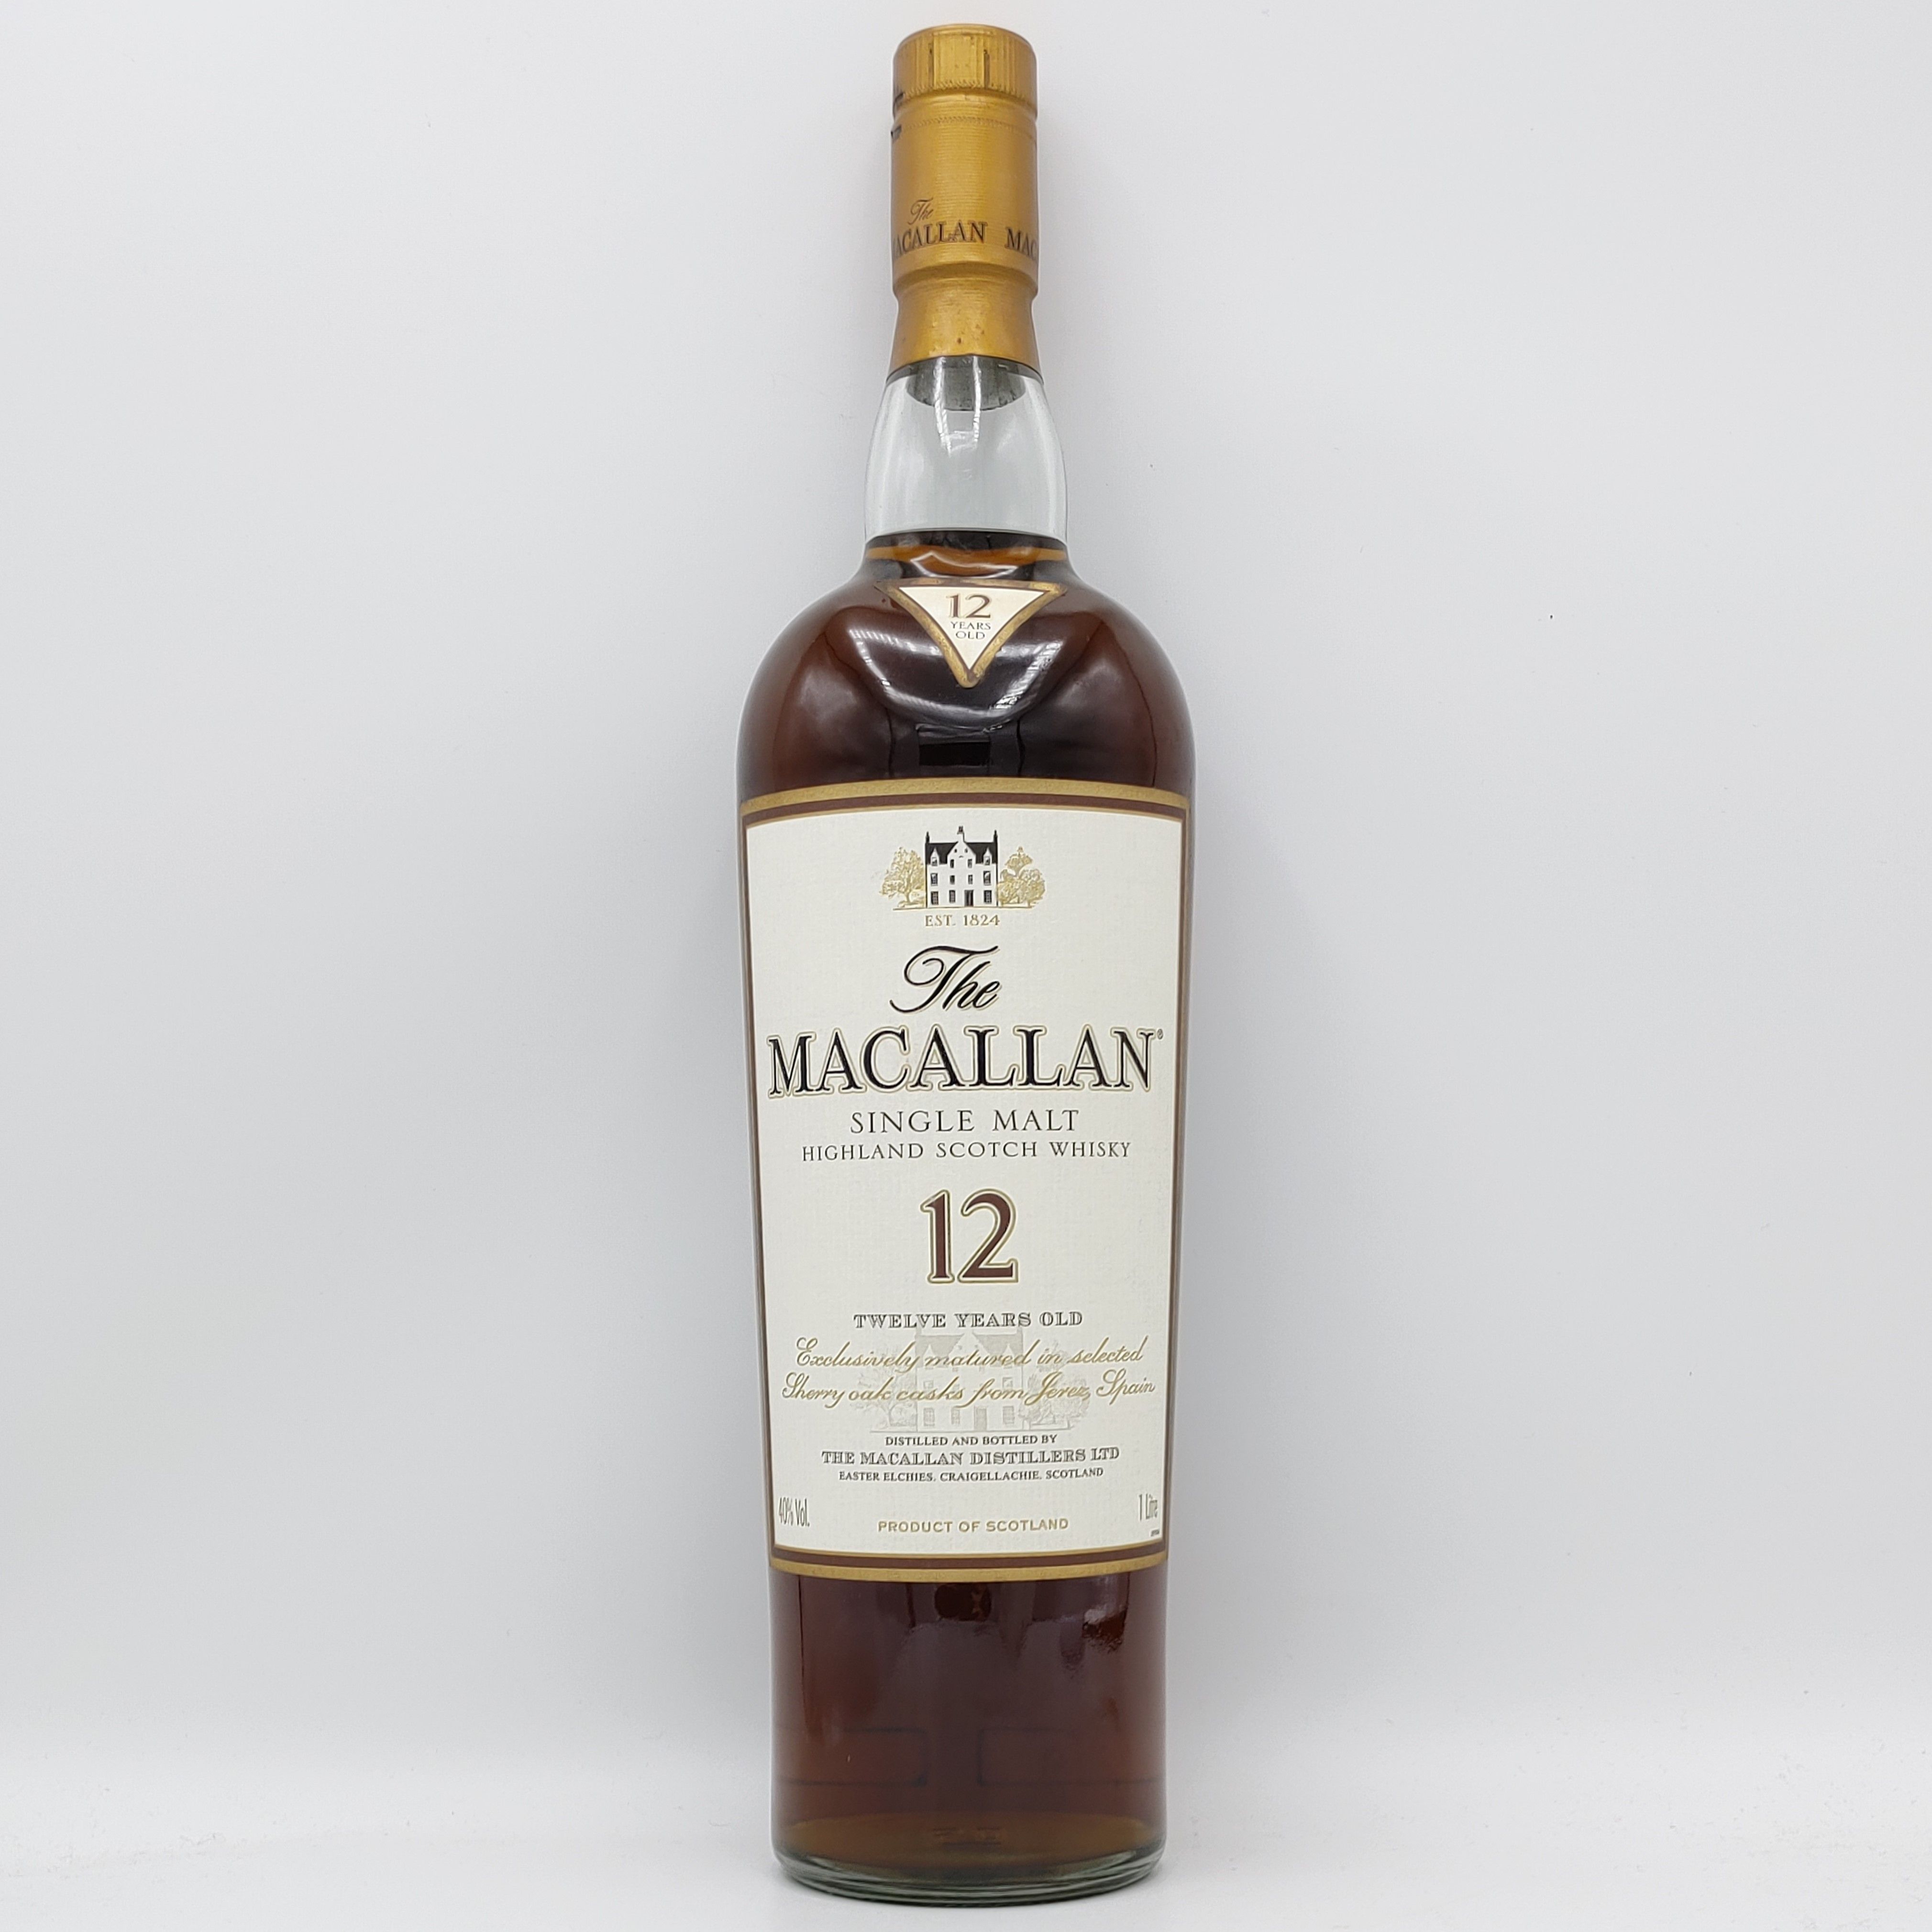 ザ マッカラン 12年 The MACALLAN 12years old SINGLE MALT HIGHLAND SCOTCH WHISKY |  Nostalgic liquor - Buyee